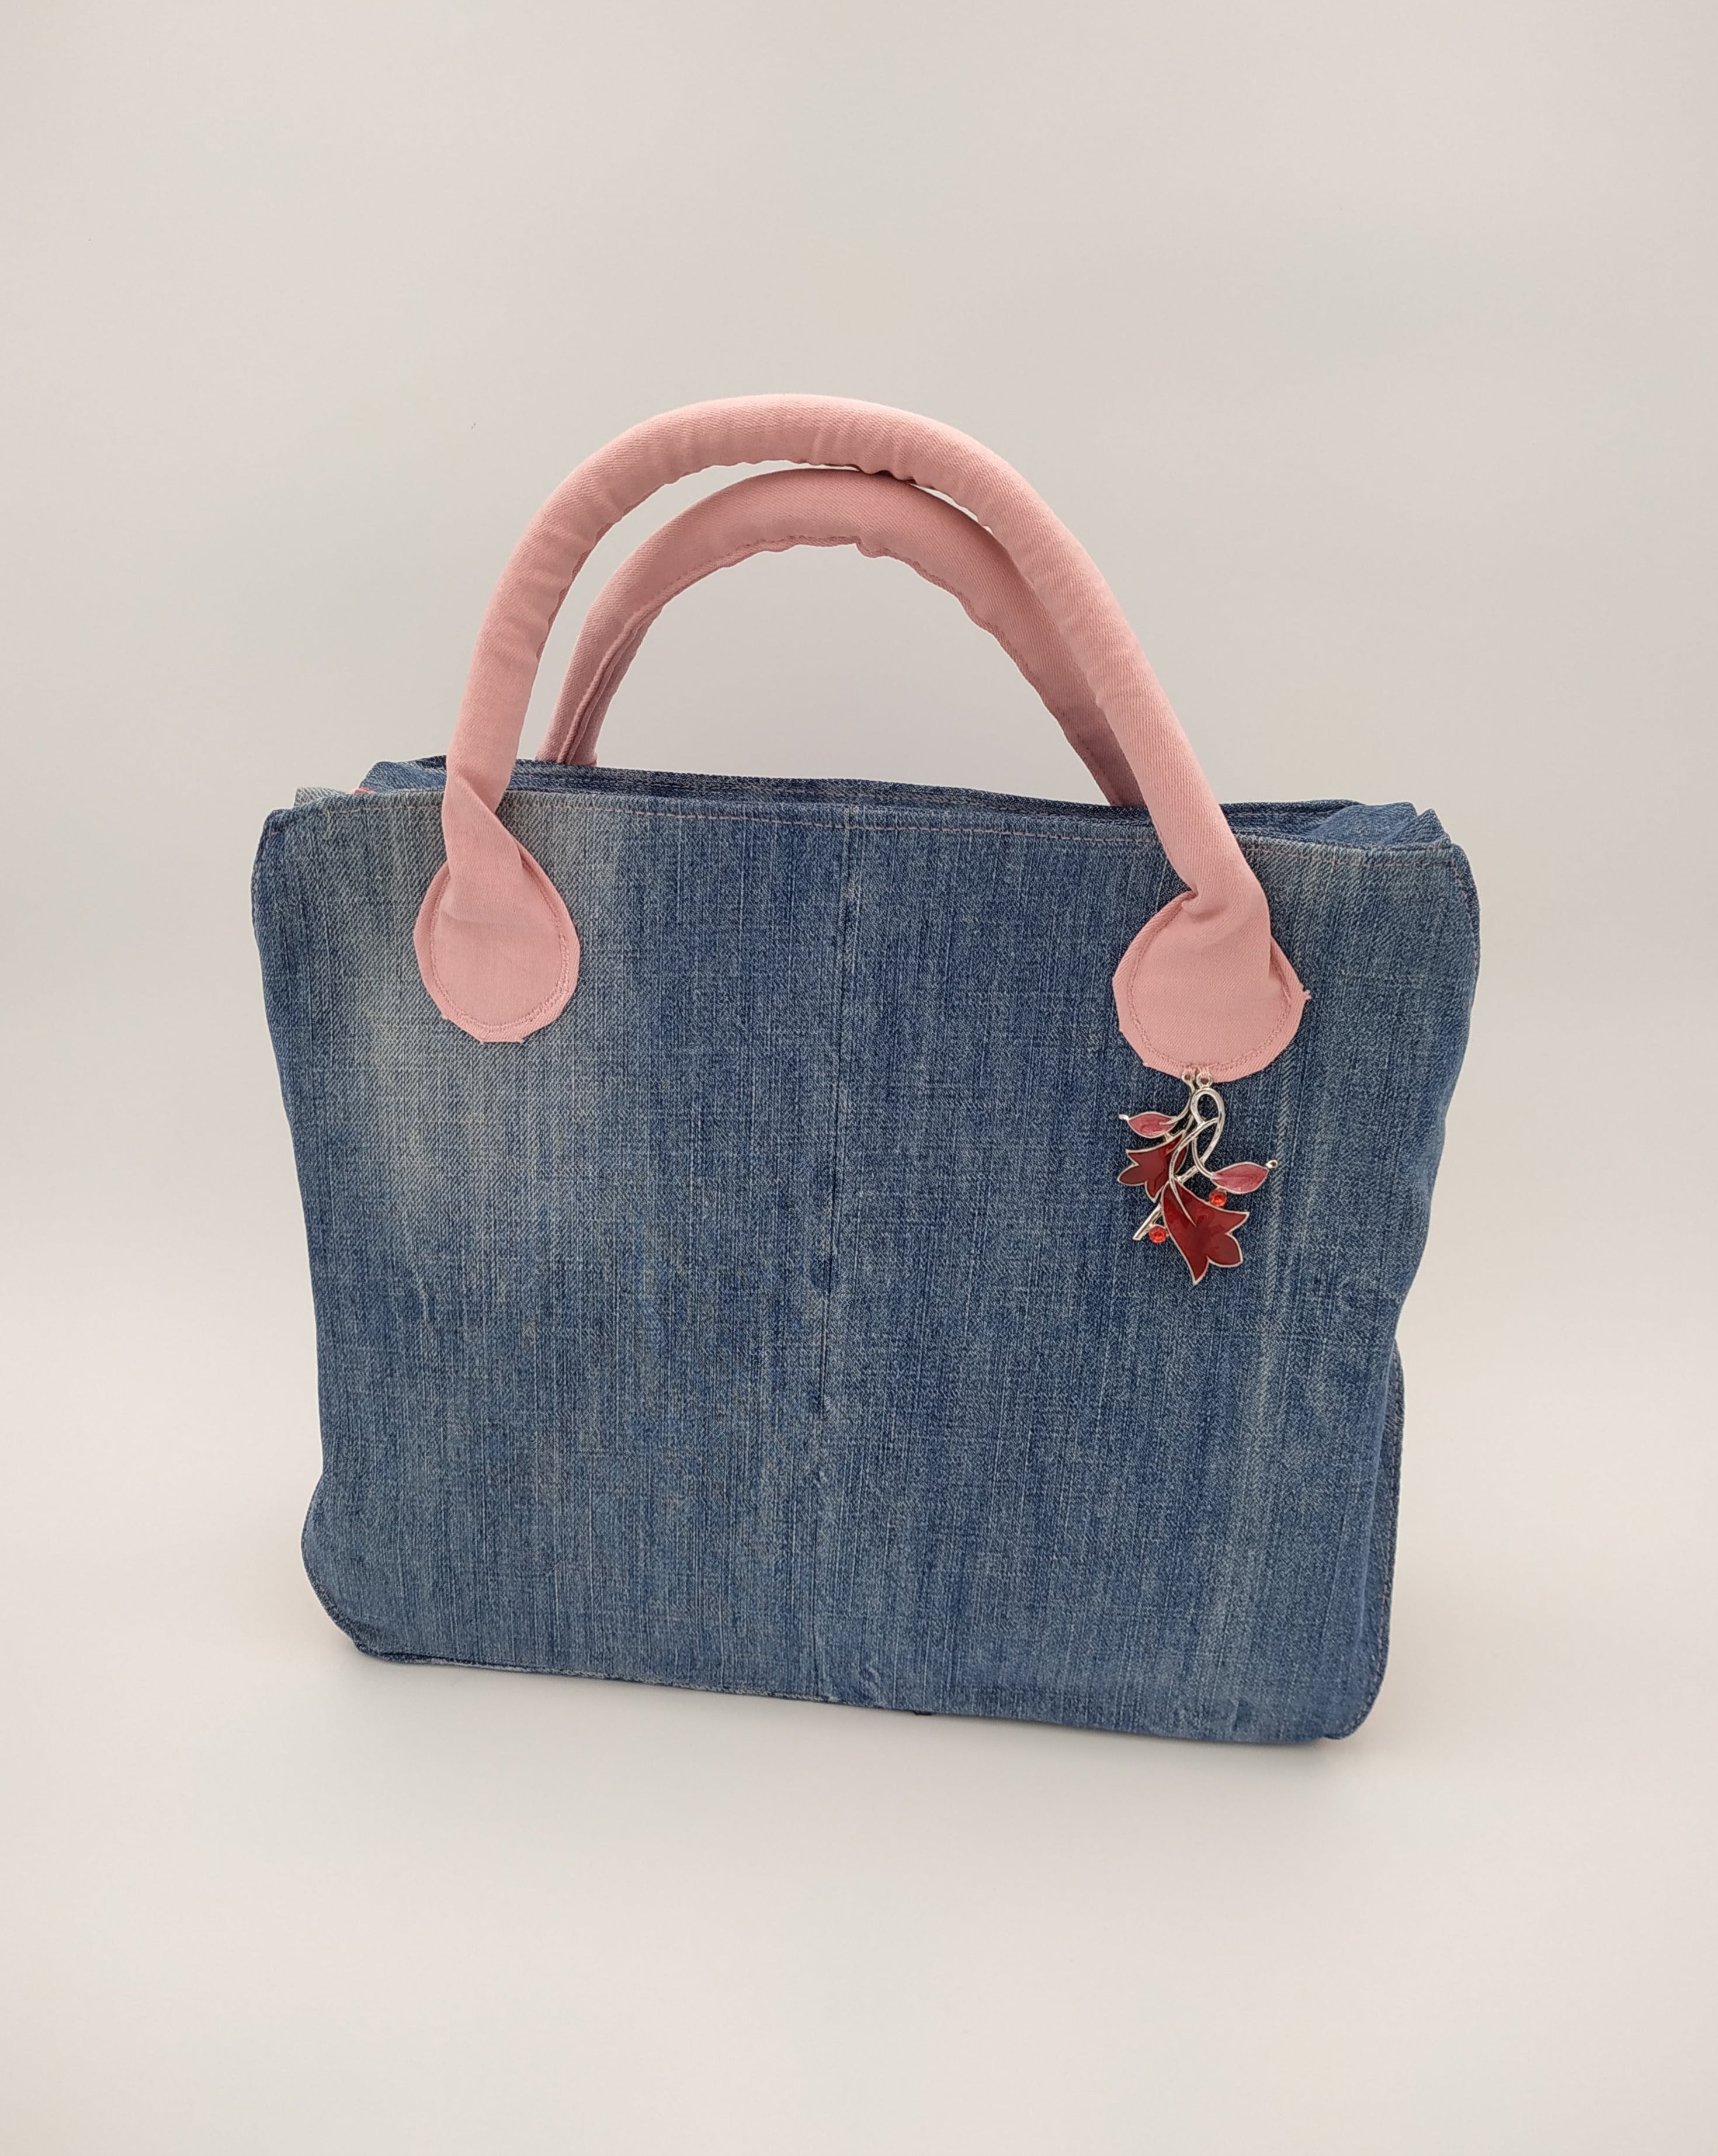 sac bicolore jean et rose: vue de face : corps du sac en jean bleu recyclé et anses en jean rose décorées d'un bijou rose et argent